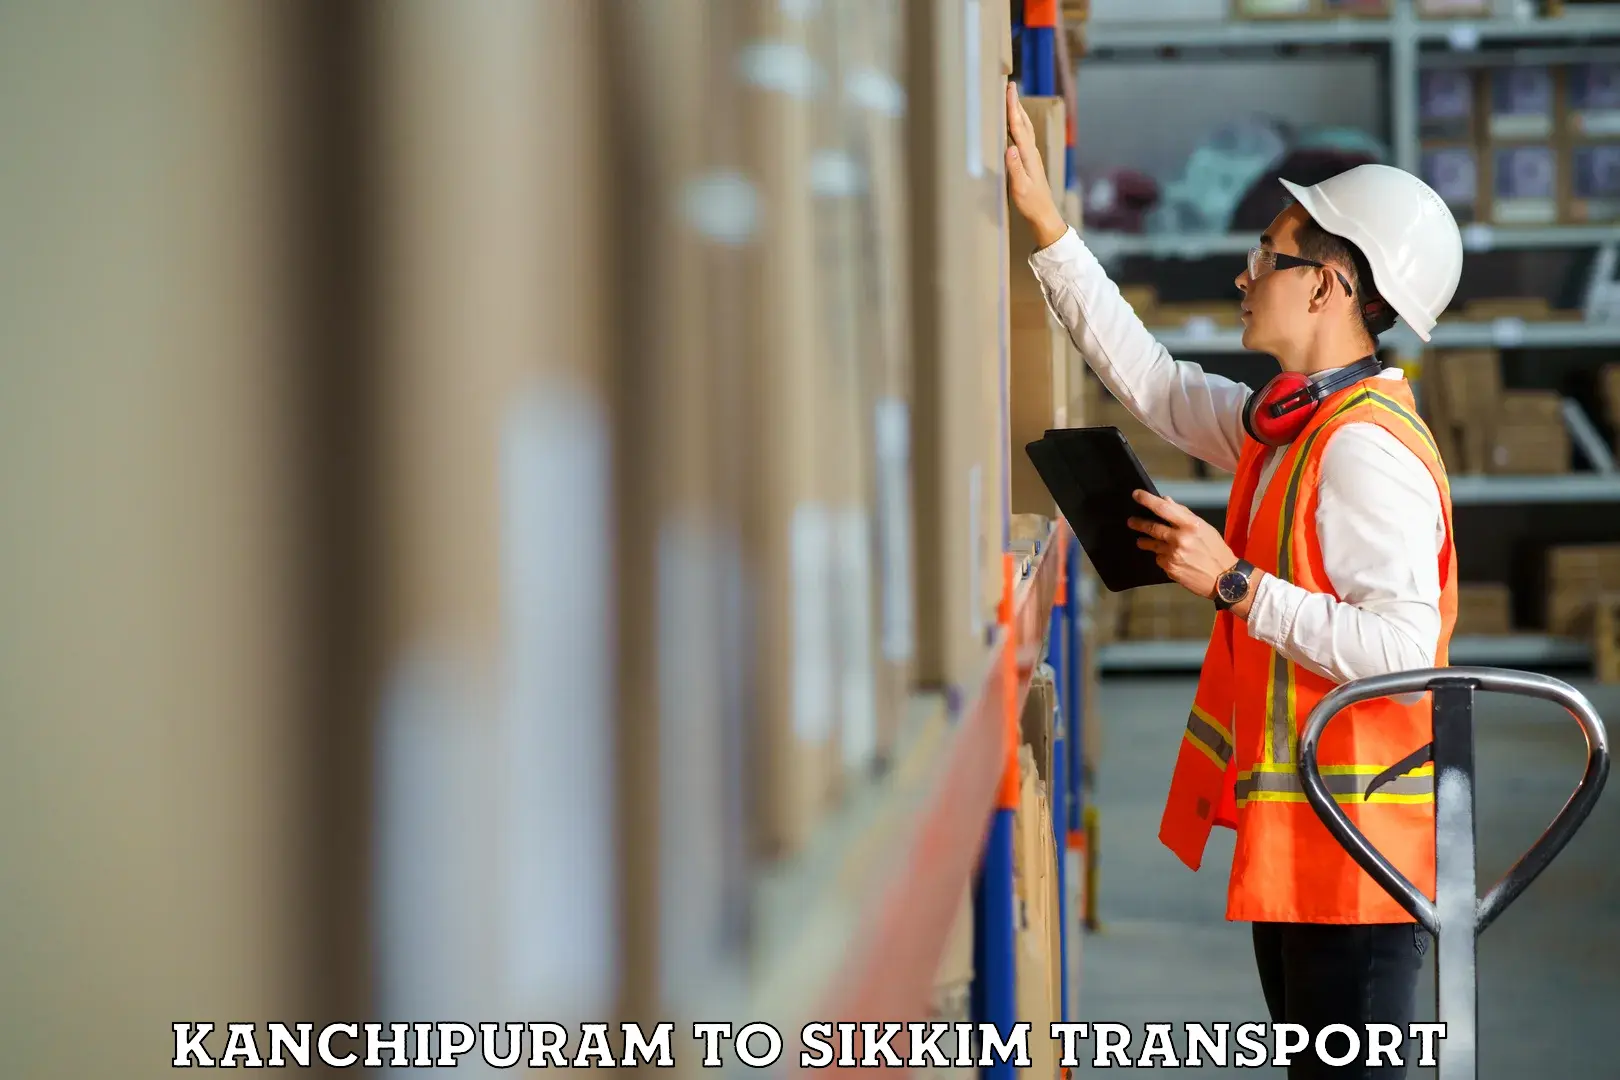 Shipping partner Kanchipuram to West Sikkim